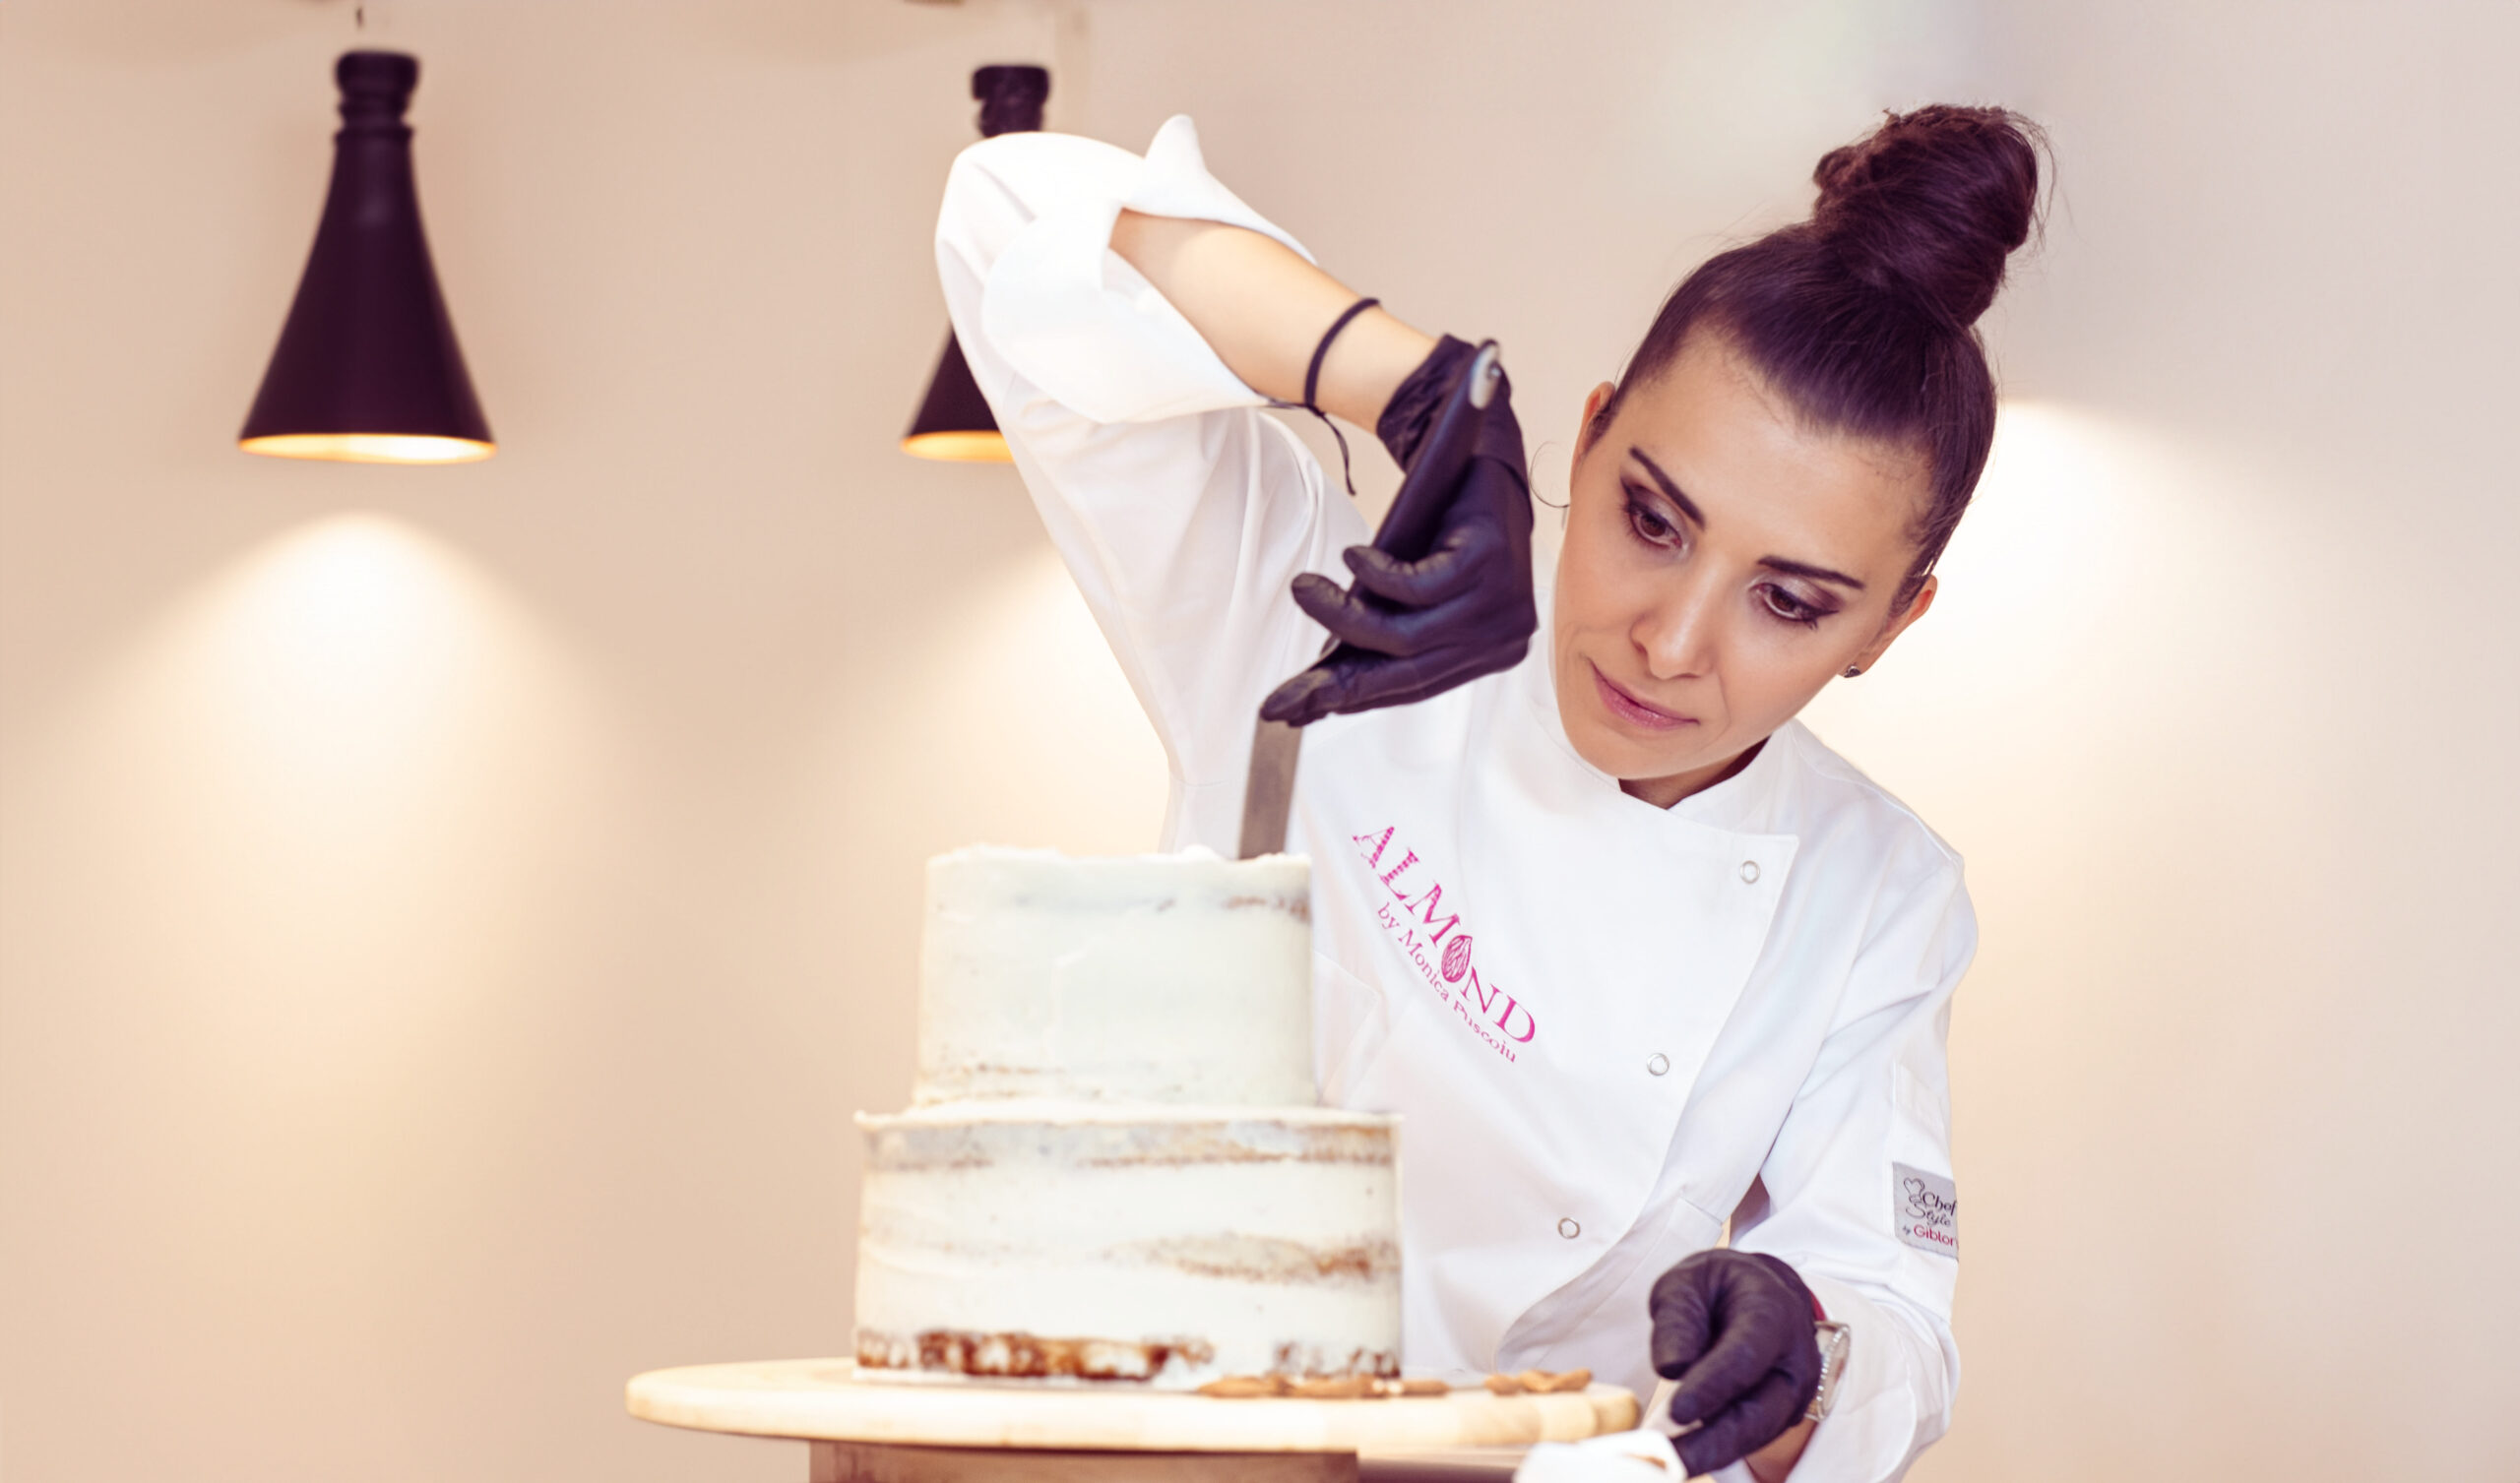 Monica Pușcoiu, semifinalistă Chefi la cuțite 2023, a deschis cofetăria artizanală Almond Cake Shop cu o investiție de 150.000 euro